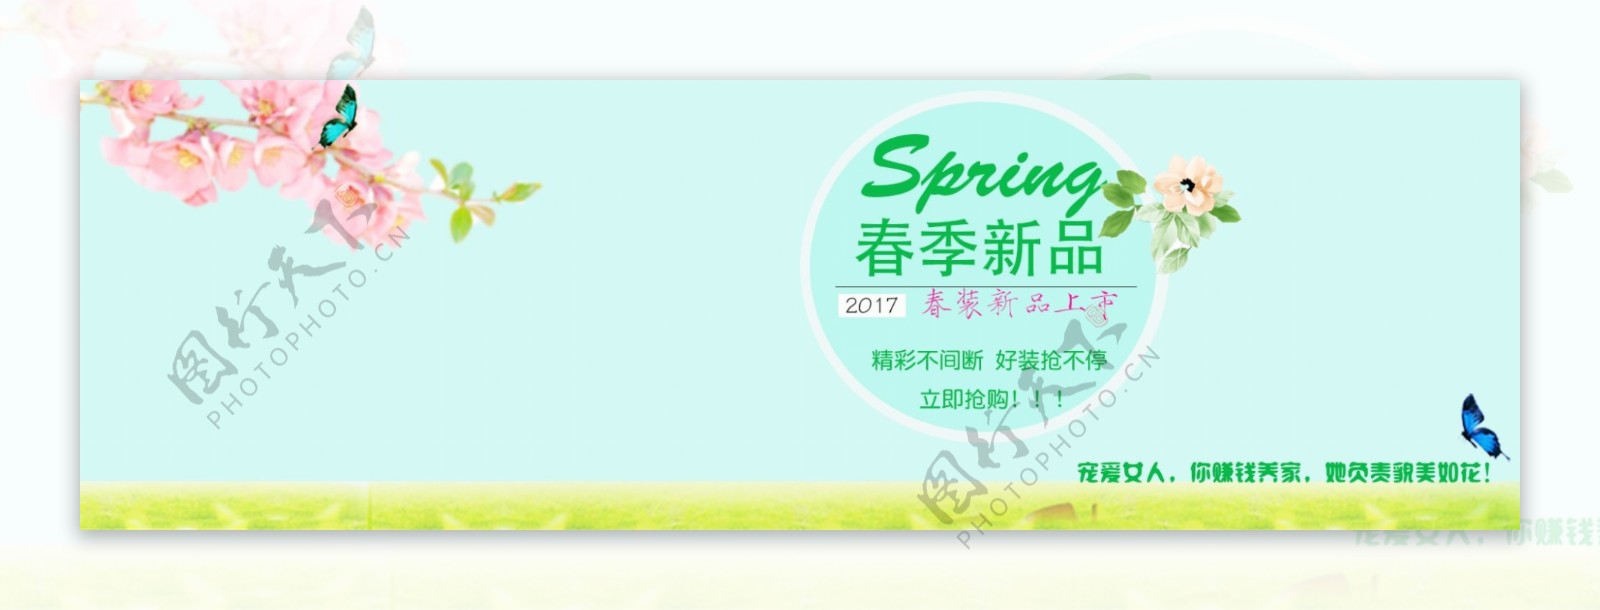 淘宝2017春季新品上市简约清新海报